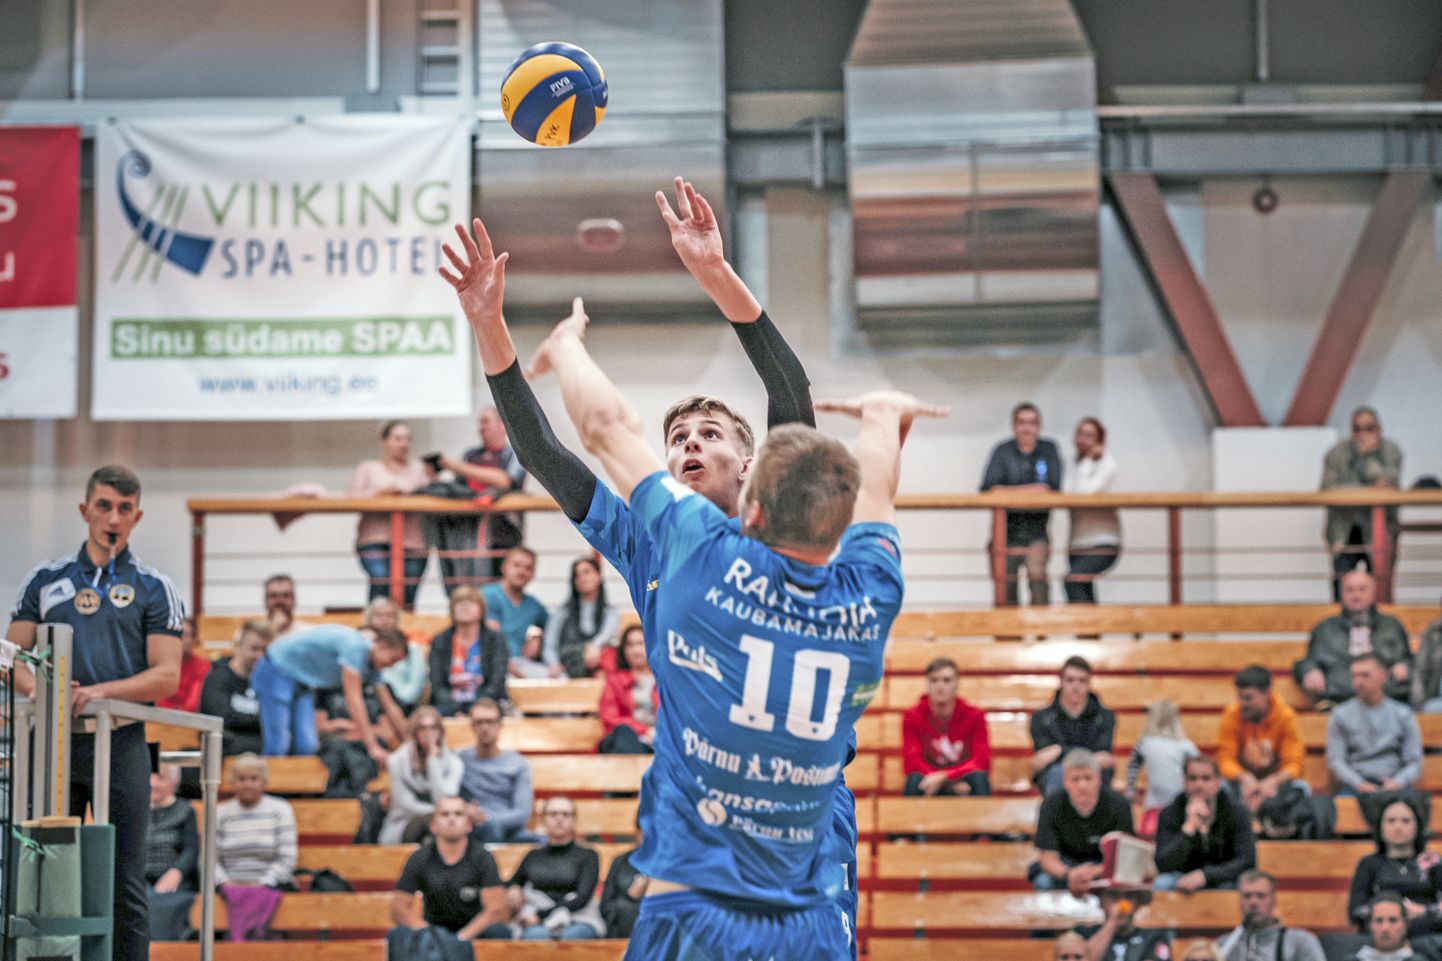 Võrkpalli meistriliigas võtavad mõõtu Pärnu ja Saaremaa klubid.